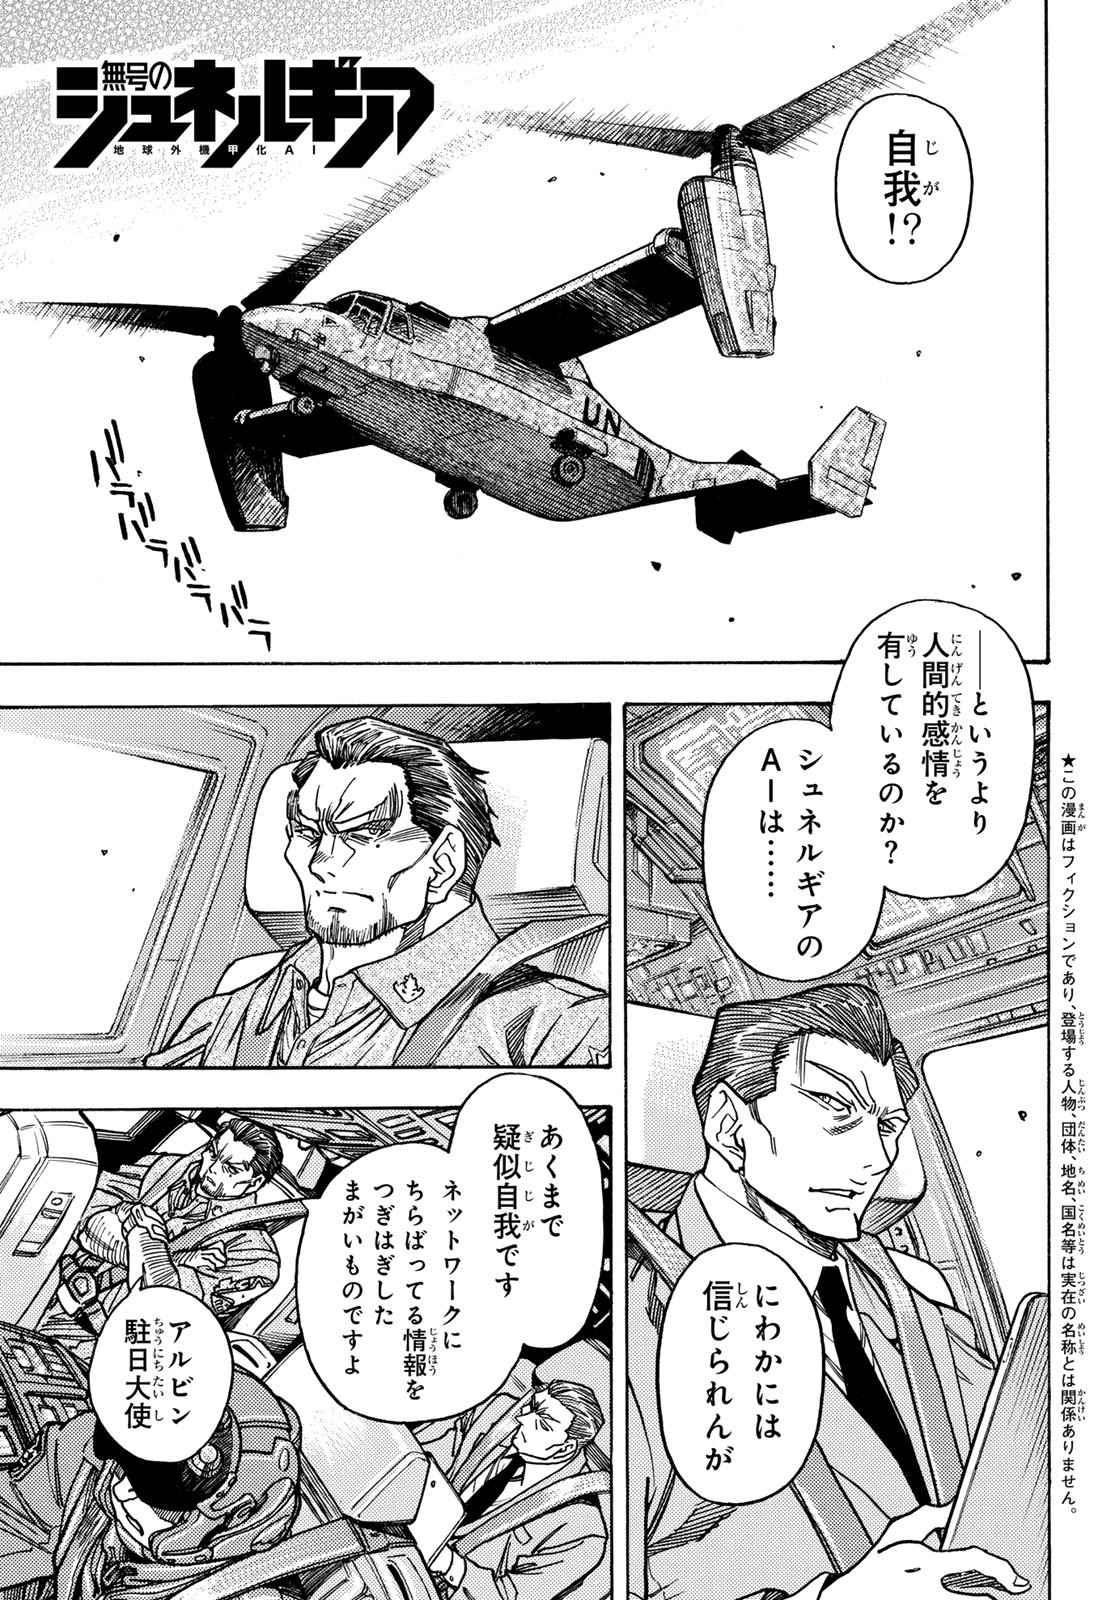 Mugou no Schnell Gear: Chikyuugai Kisouka AI - Chapter 51 - Page 1